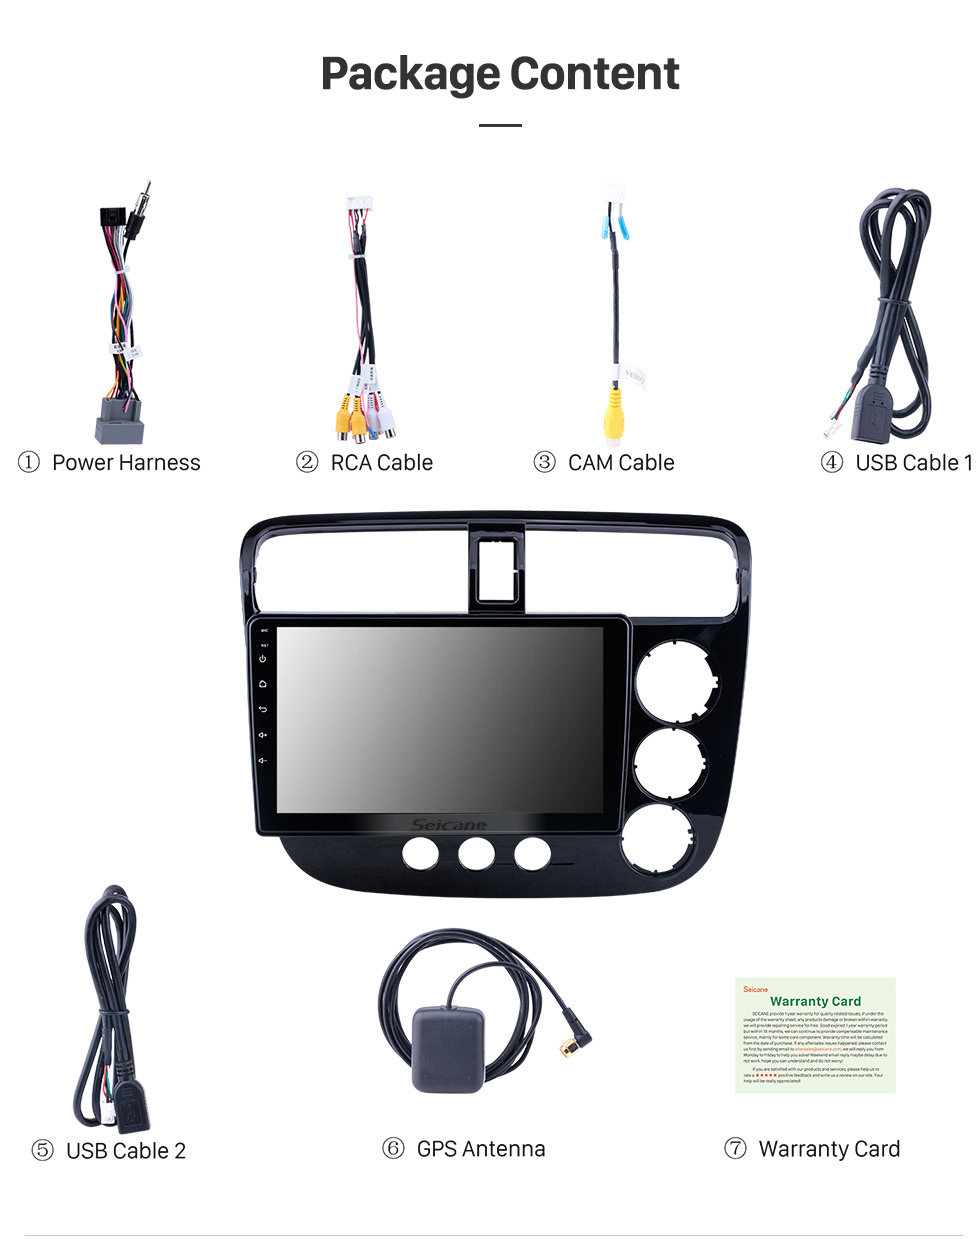 Seicane OEM 9 polegadas Android 10.0 para 2001-2005 Honda Civic RHD Manual A / C Radio com Bluetooth HD Touchscreen Suporte ao sistema de navegação GPS Carplay DAB +